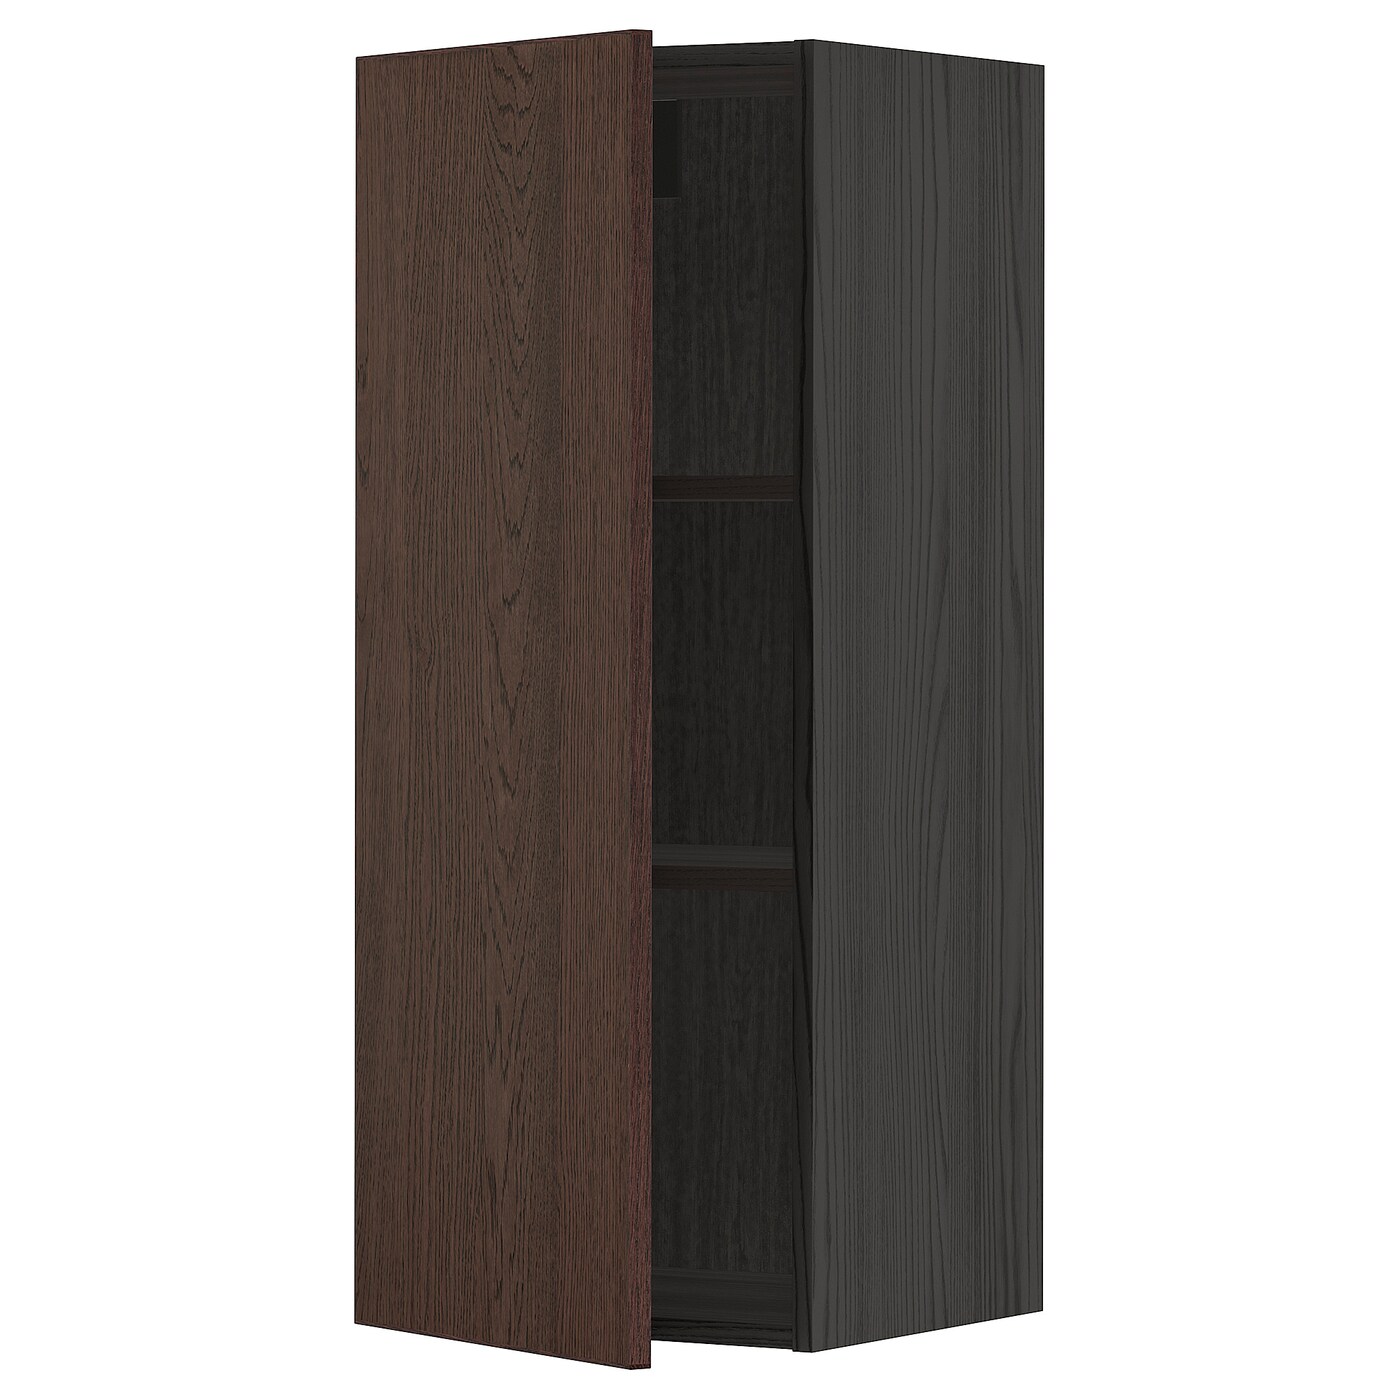 Навесной шкаф с полкой - METOD IKEA/ МЕТОД ИКЕА, 100х40 см, черный/коричневый